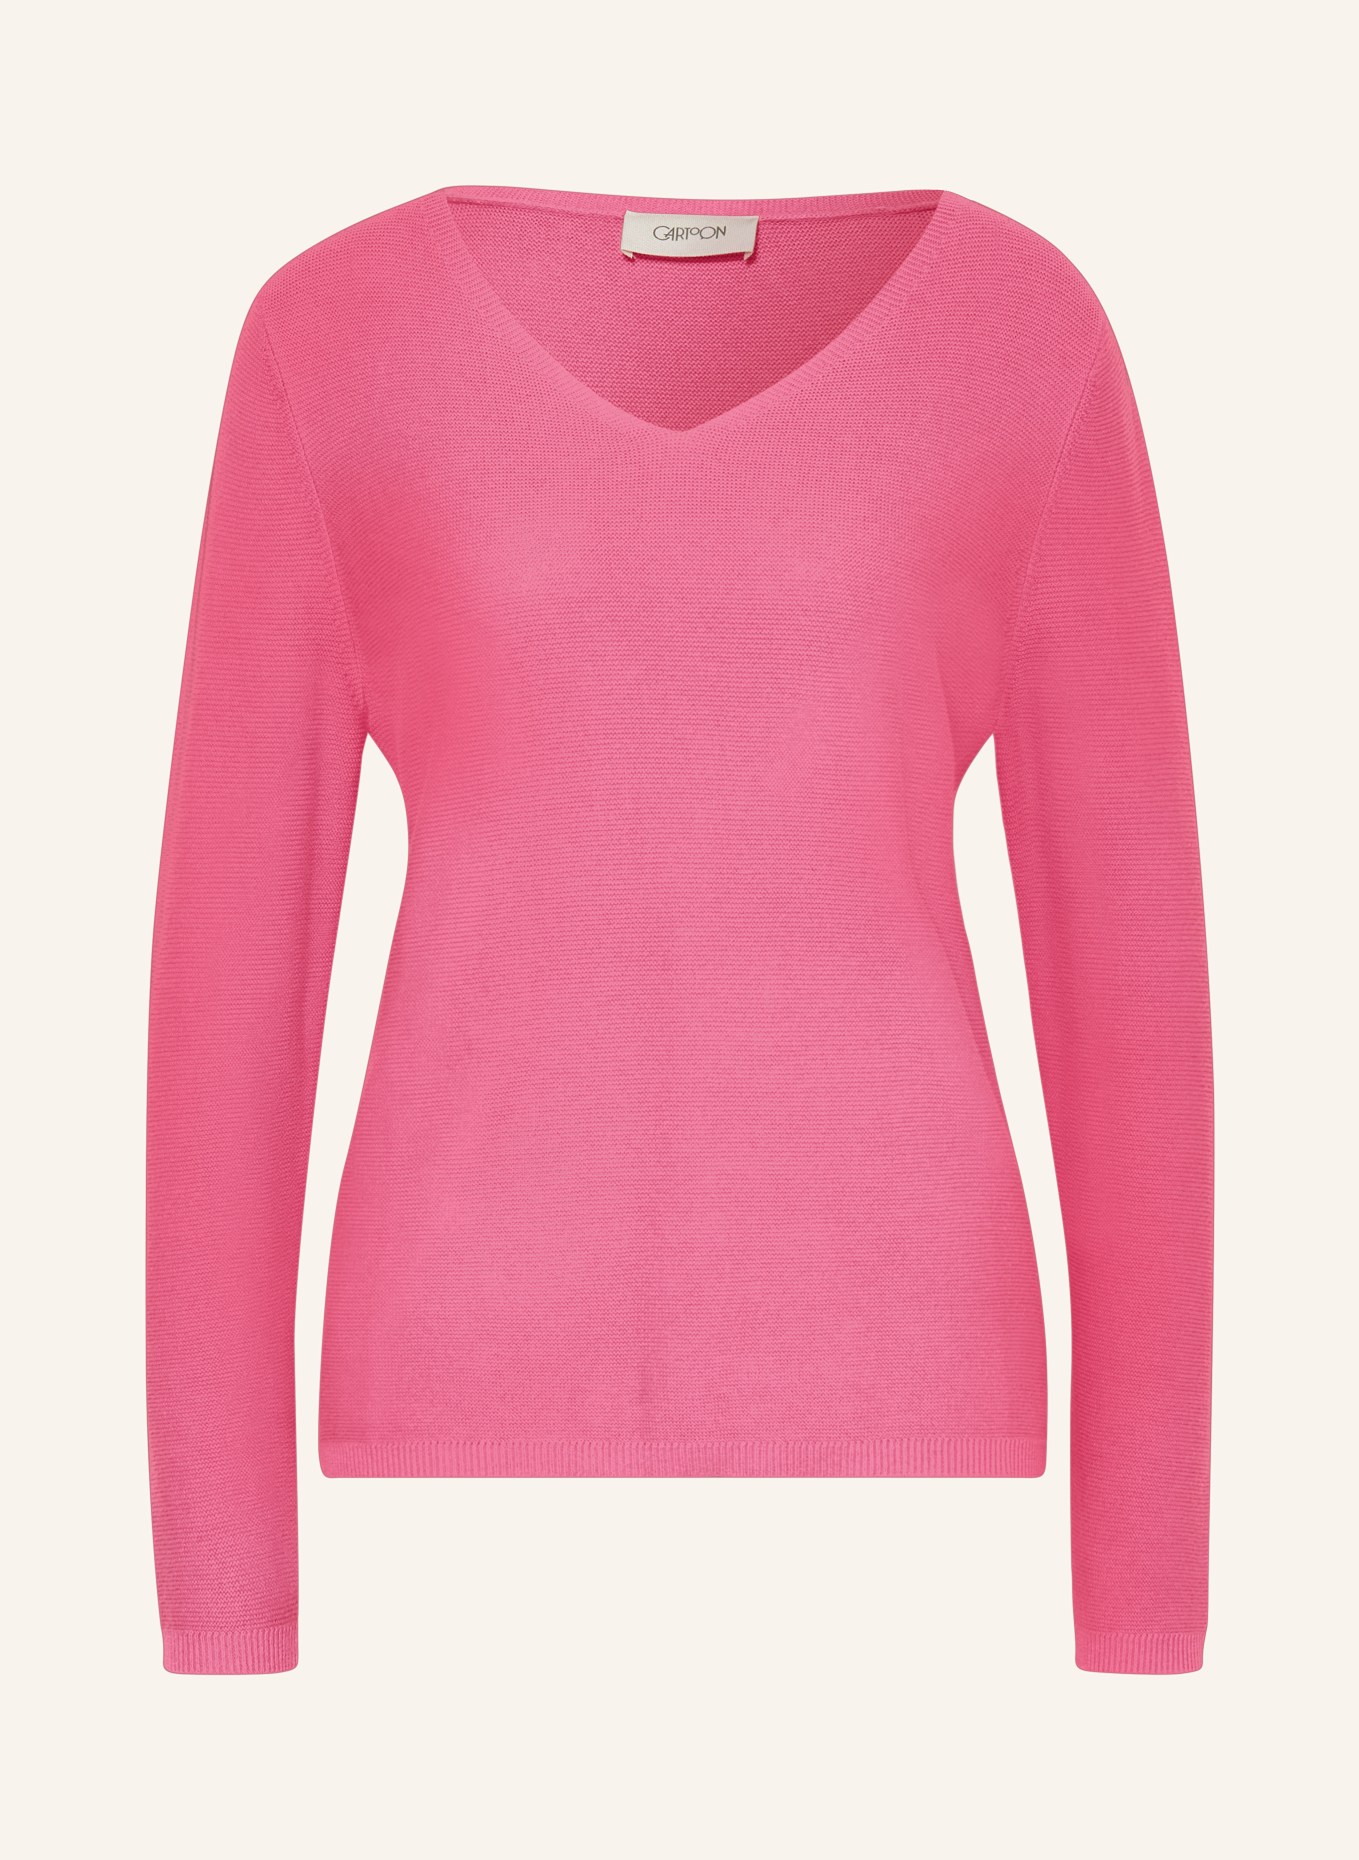 CARTOON Pullover, Farbe: PINK (Bild 1)